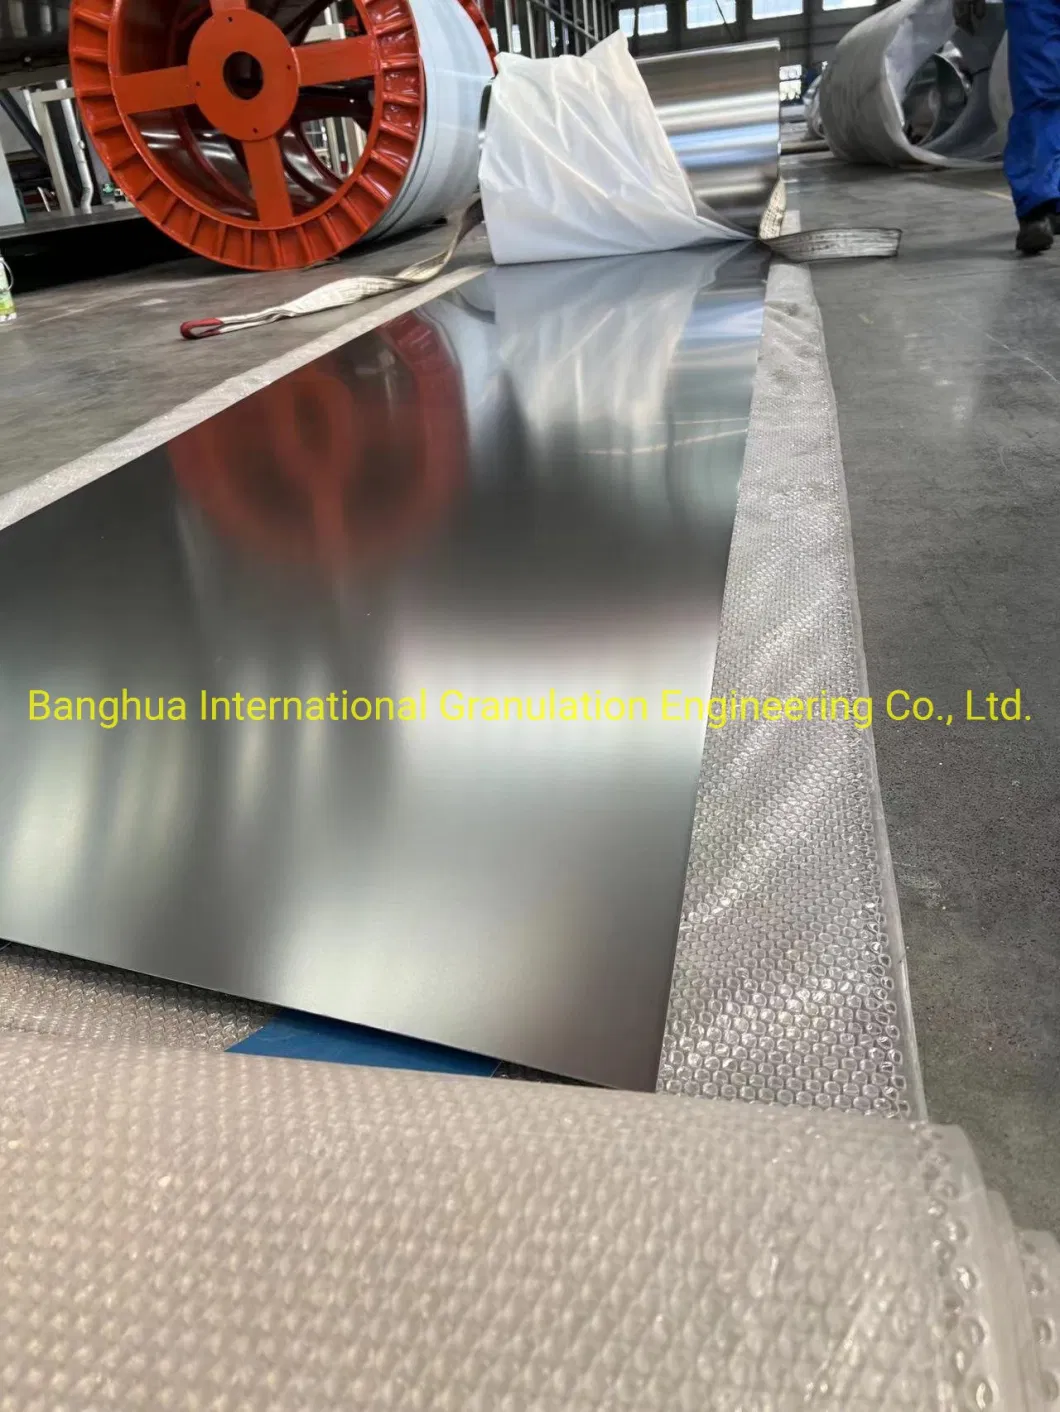 Stainless Steel Belt Strip for Conveyor, Granulation Equipment, Granulator etc